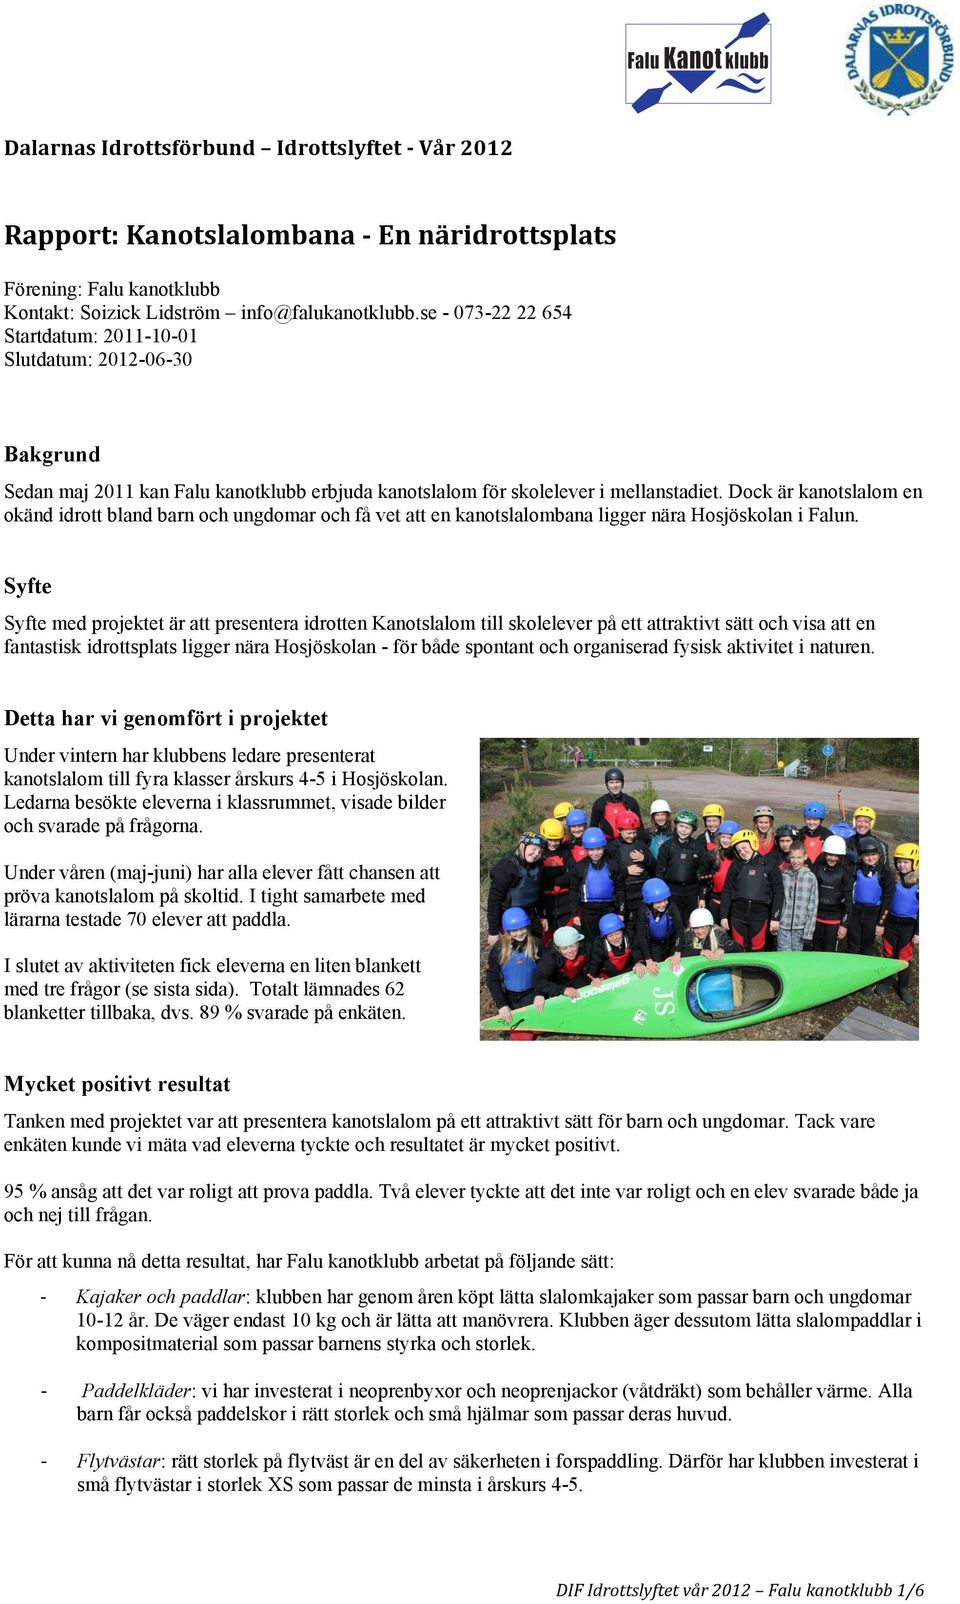 Dock är kanotslalom en okänd idrott bland barn och ungdomar och få vet att en kanotslalombana ligger nära Hosjöskolan i Falun.